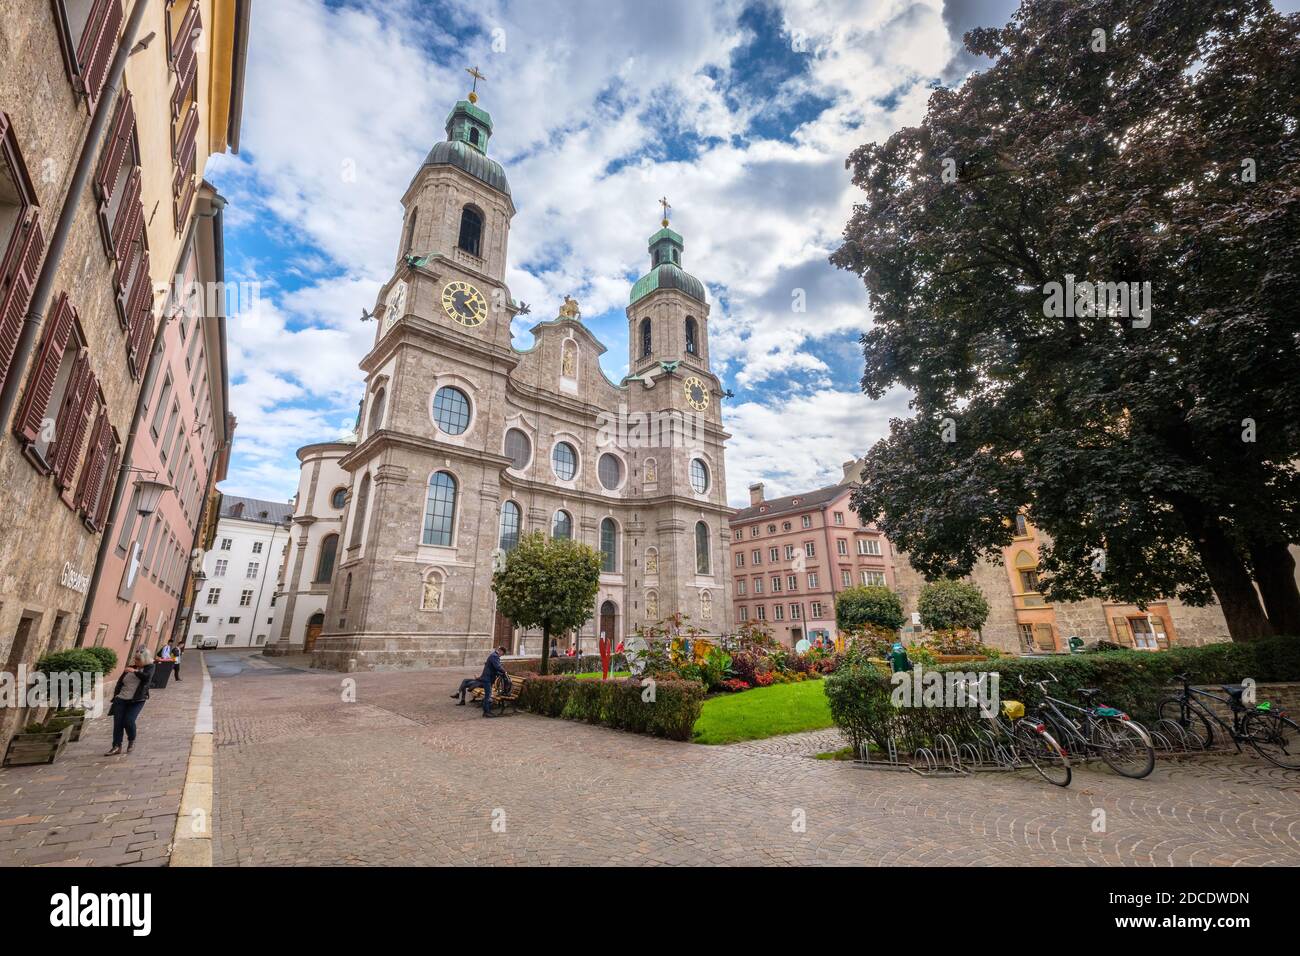 Innsbruck, Autriche - 25 septembre 2019 : les touristes visitent la cathédrale Saint-Jacques une cathédrale baroque du diocèse catholique romain d'Innsbruck Banque D'Images